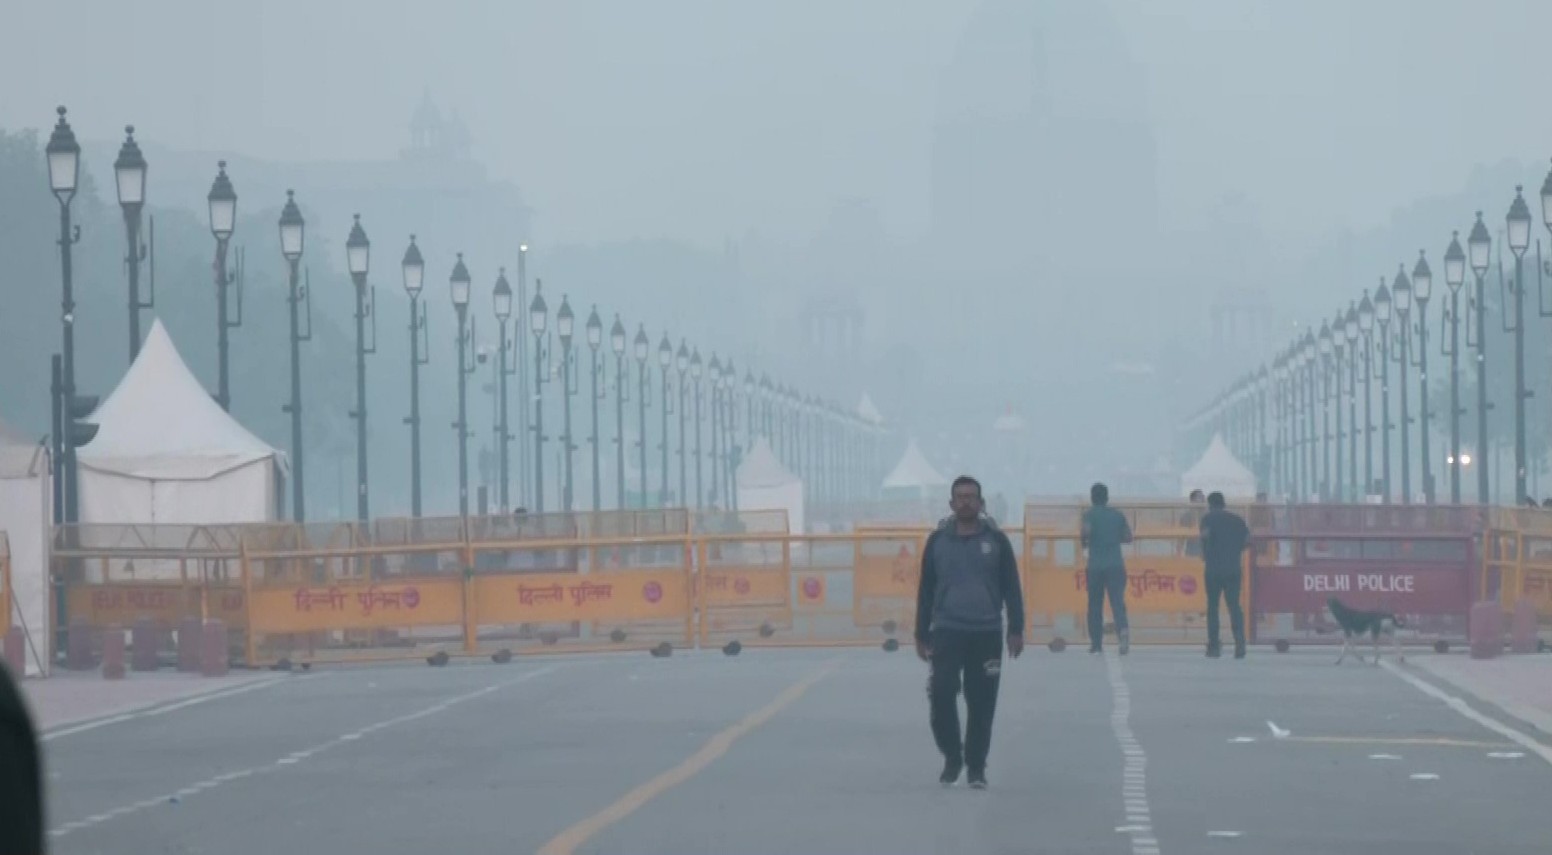 दिवाली के बाद सुबह दिल्ली की वायु गुणवत्ता 'बहुत खराब', लेकिन पिछले सालों की तुलना में बेहतर